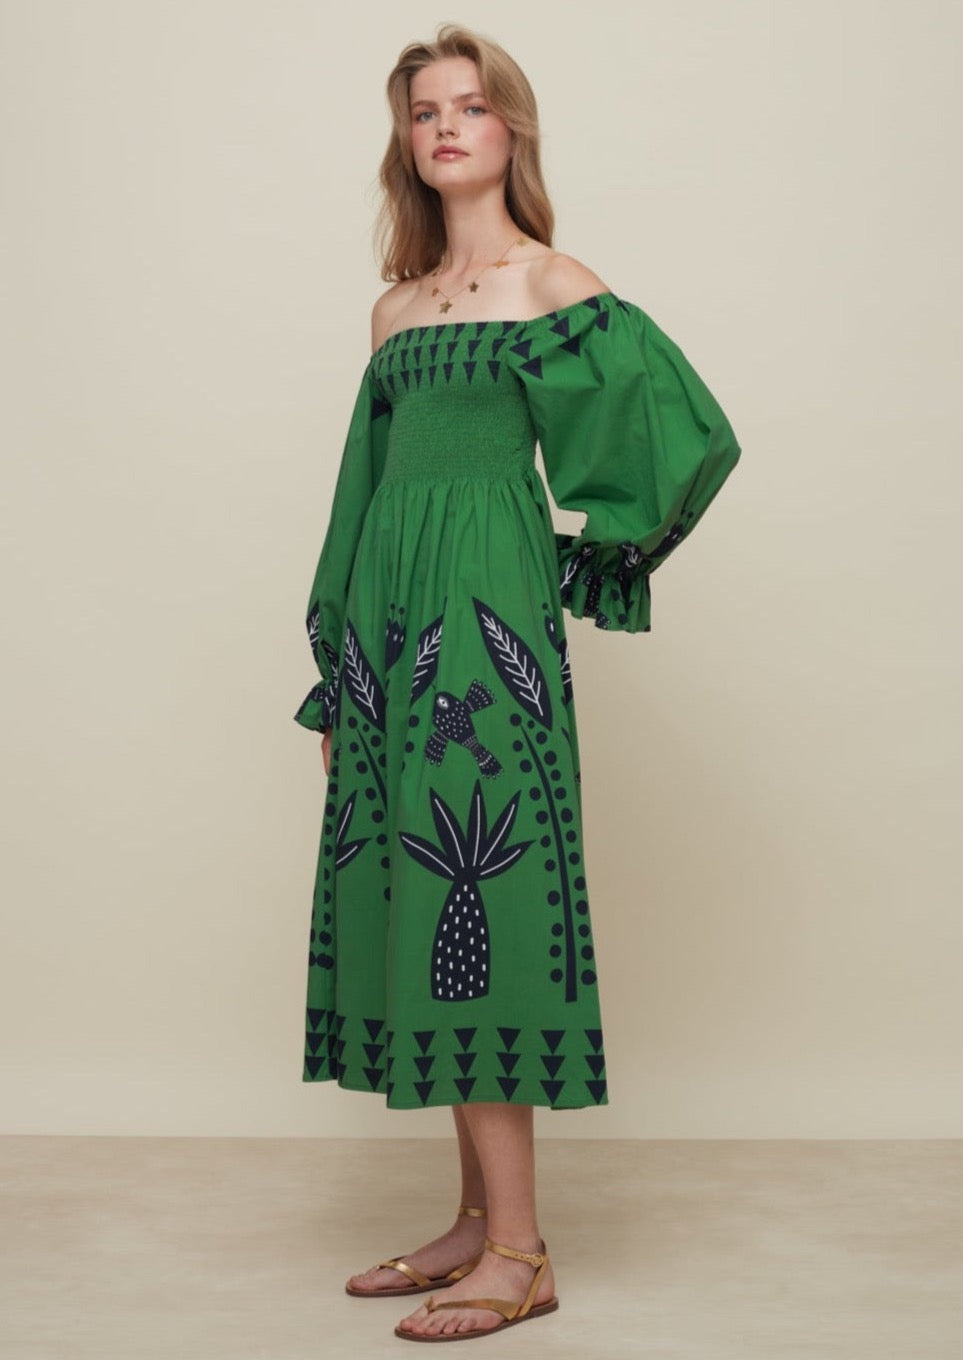 Galeria-Hortencia Floresta Green Dress-Justbrazil